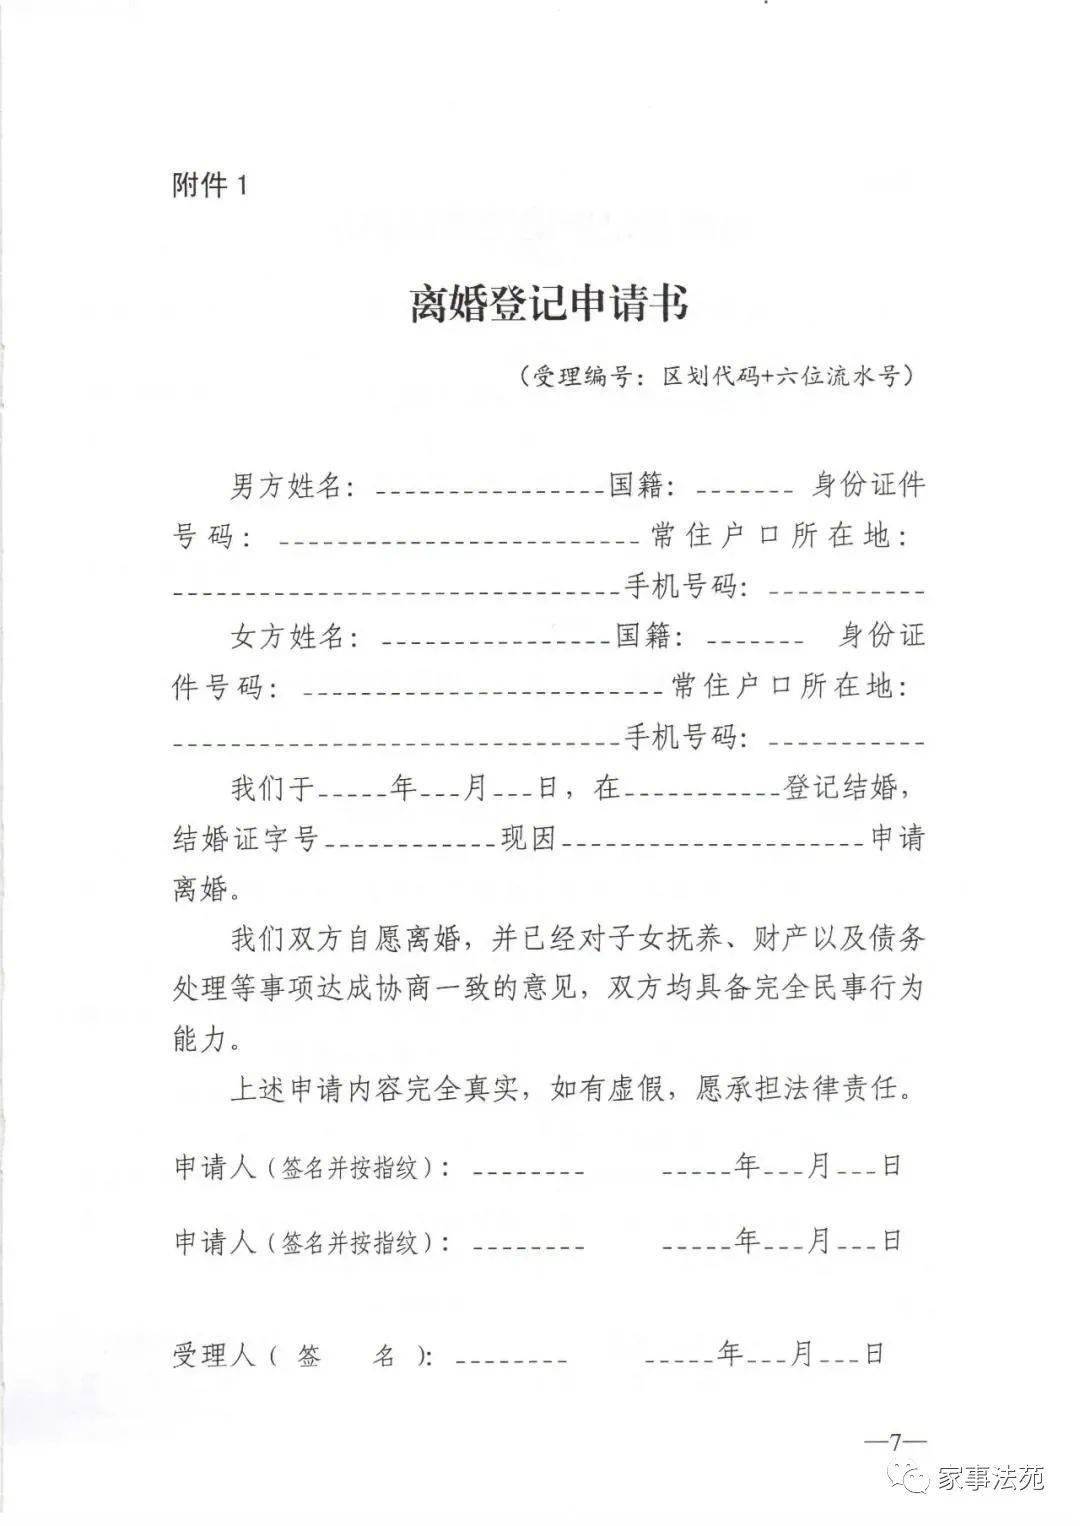 民政部关于贯彻落实 中华人民共和国民法典 中有关婚姻登记规定的通知 家事动态 来源 中华人民共和国民政部官网